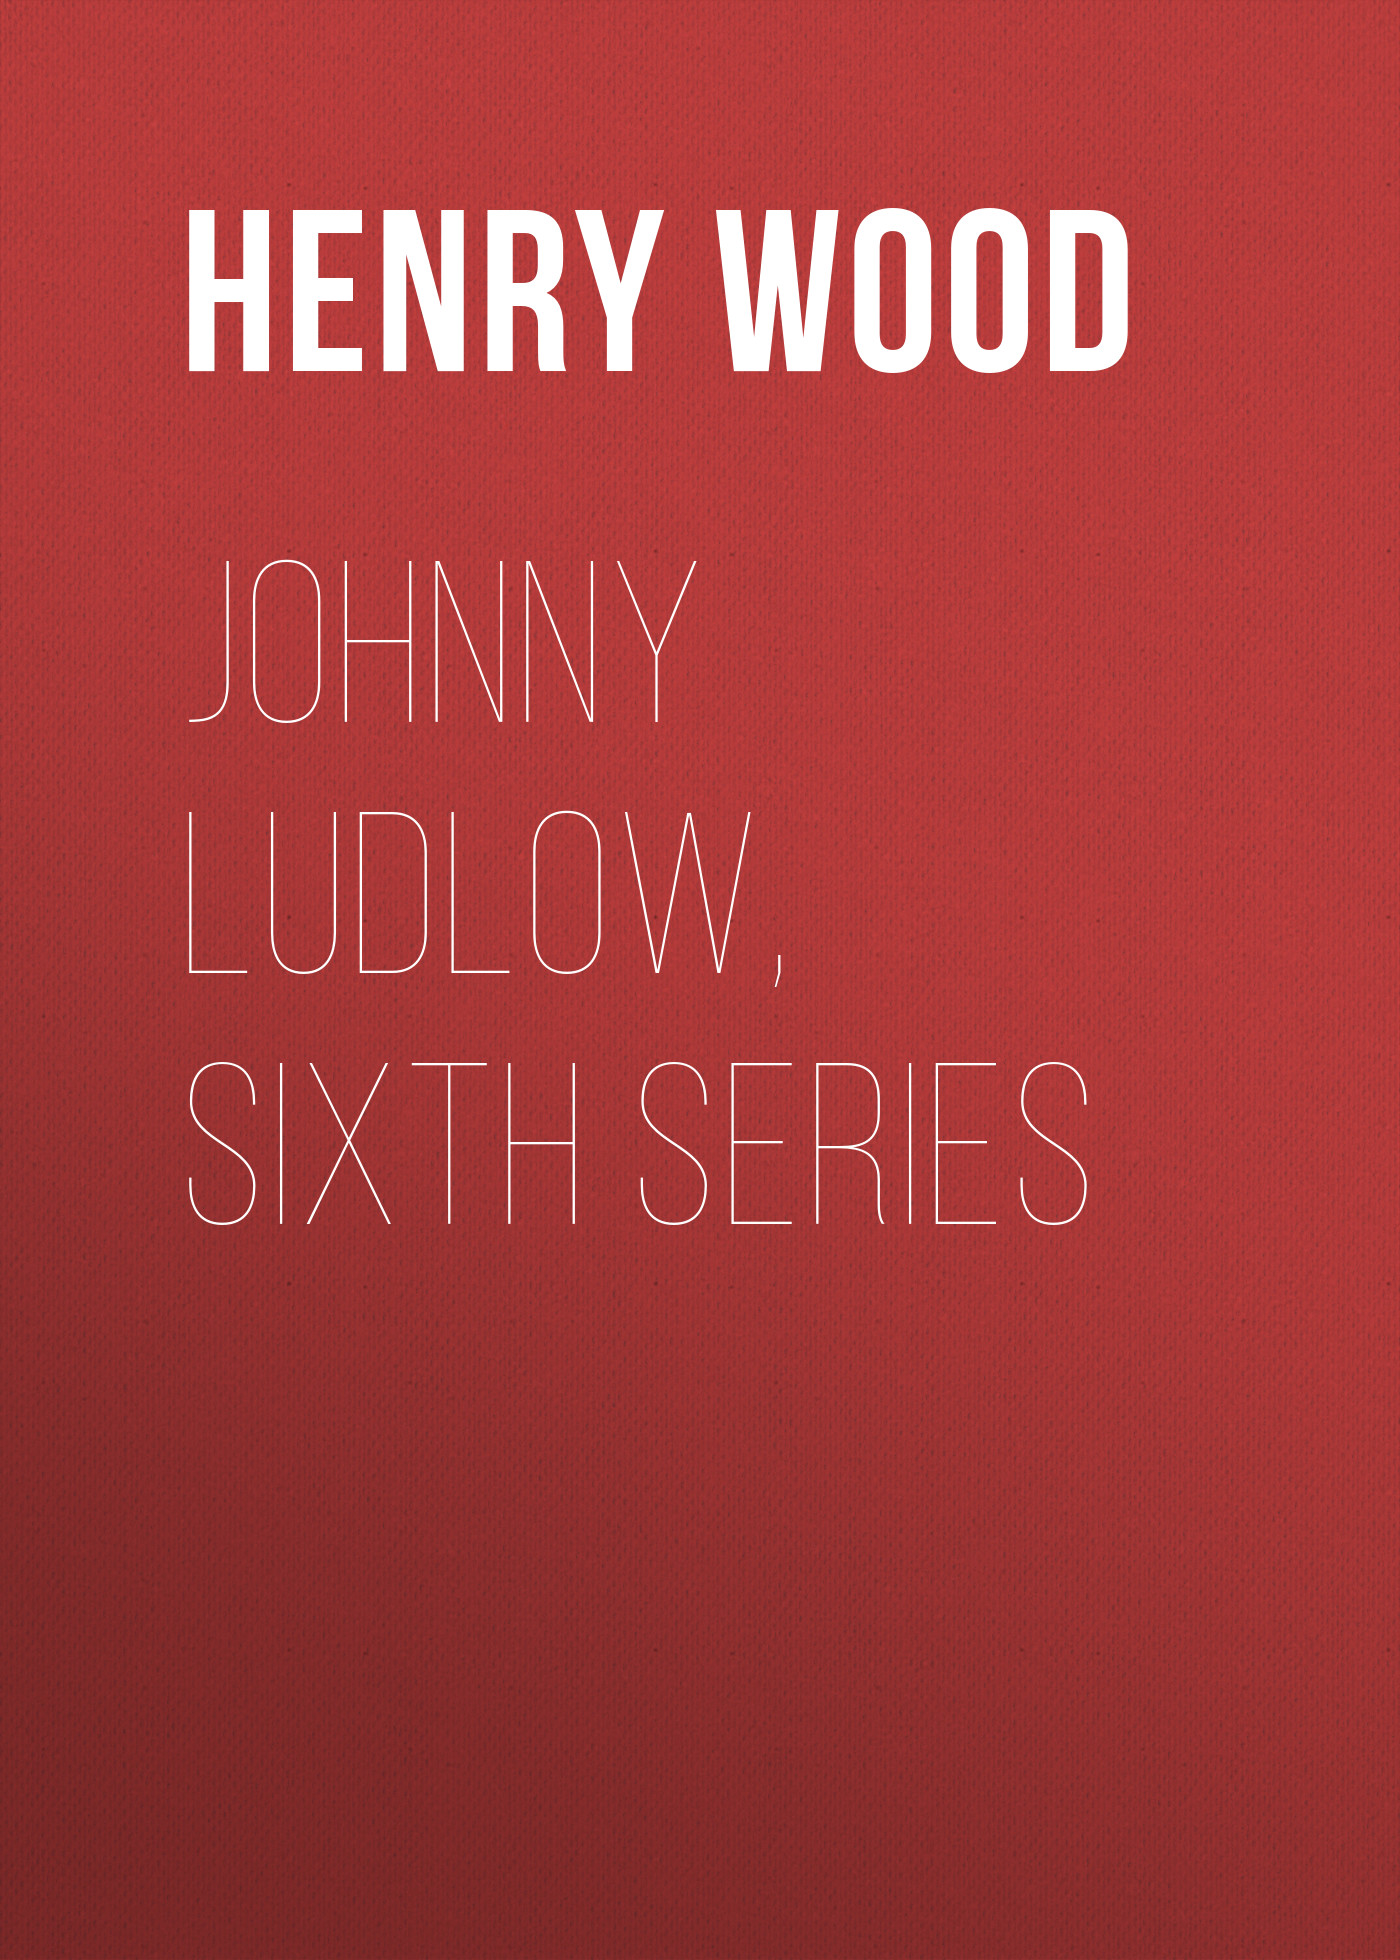 Книга Johnny Ludlow, Sixth Series из серии , созданная Henry Wood, может относится к жанру Зарубежная классика, Литература 19 века, Зарубежная старинная литература. Стоимость электронной книги Johnny Ludlow, Sixth Series с идентификатором 35007545 составляет 0 руб.